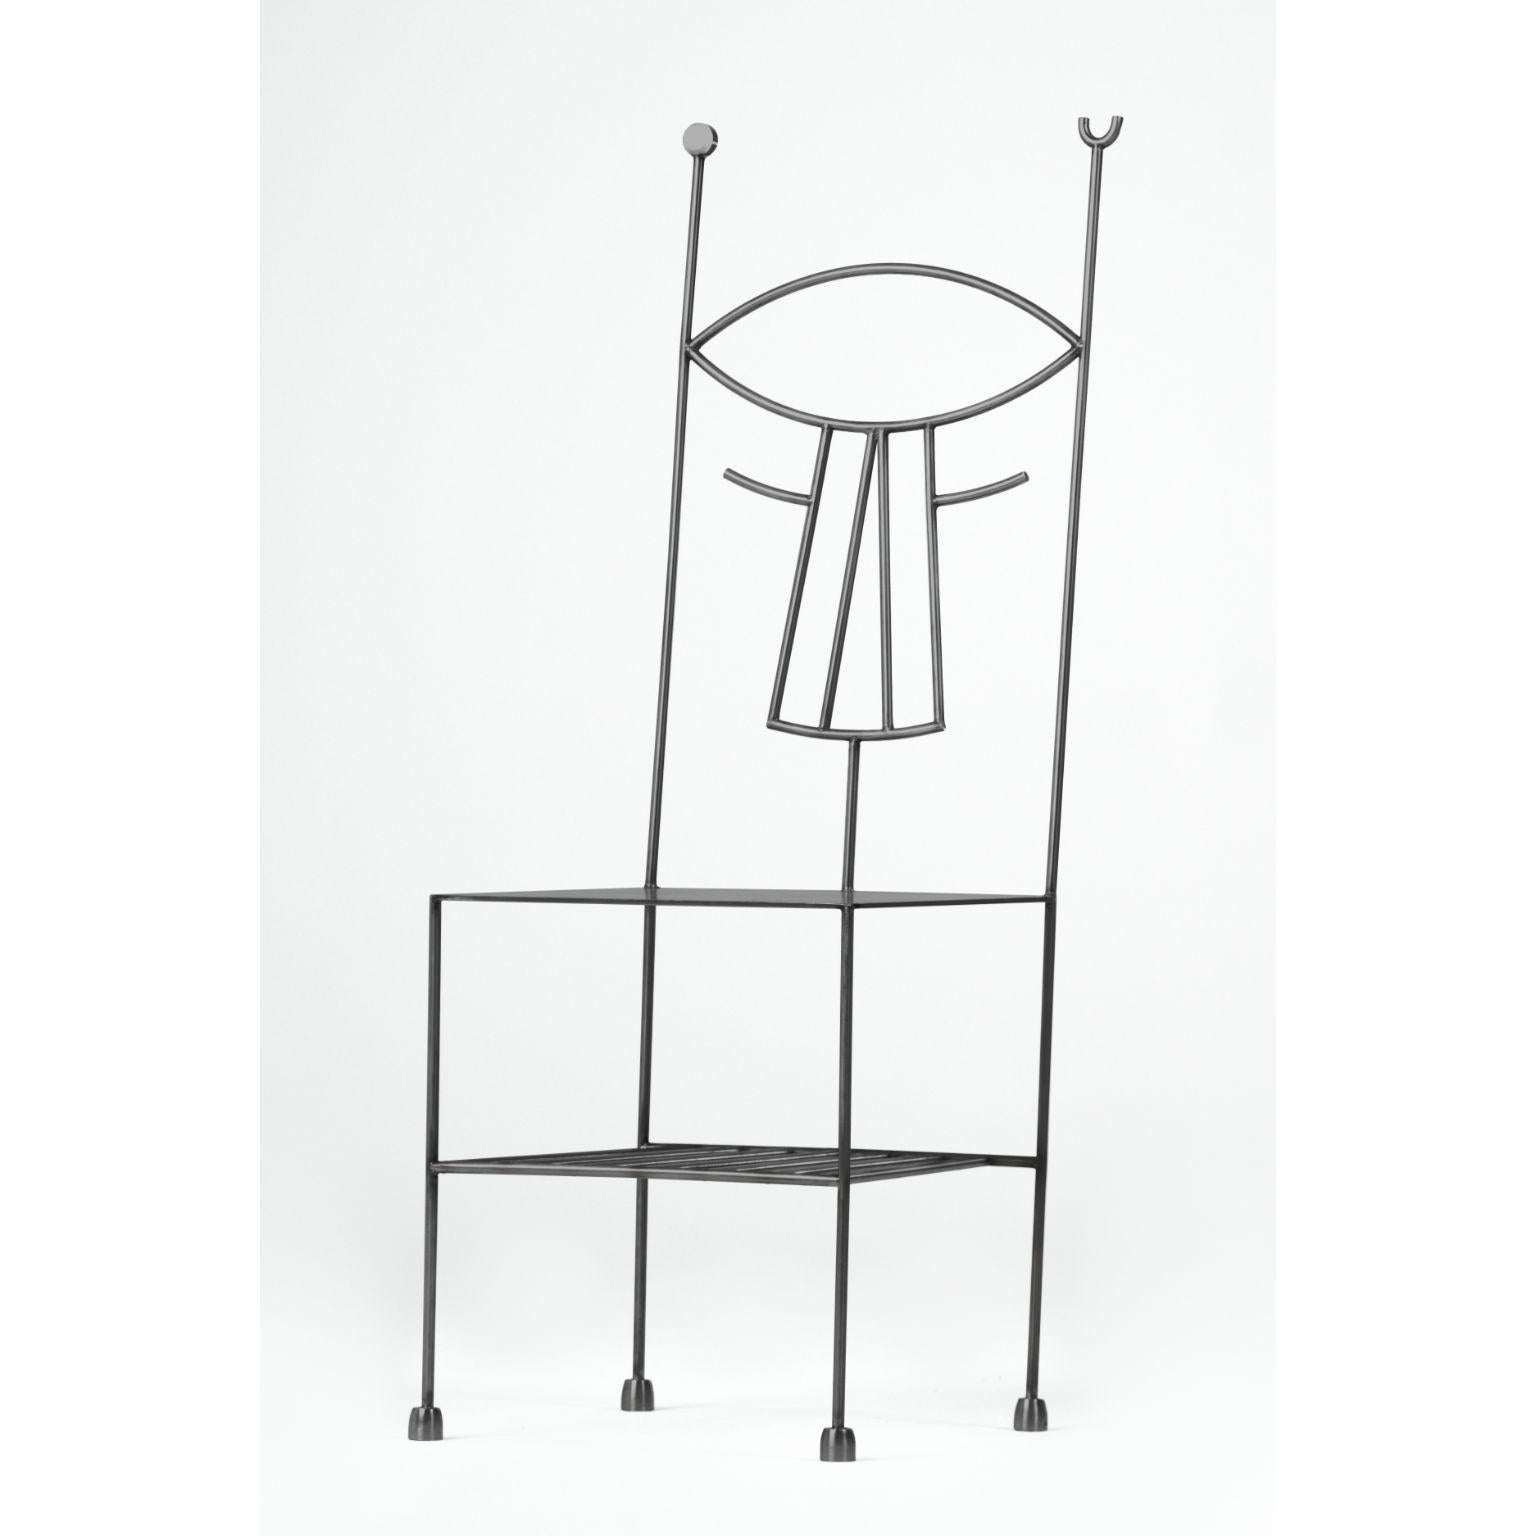 Musa-Stuhl von Qvinto Studio
Einzigartiges Stück. Handgefertigt.
Abmessungen: T 40 x B 40 x H 114 cm.
MATERIAL: rostfreier Stahl.

Die Frau mit dem Fächer ist zwar kein surrealistisches Werk, aber repräsentativ für den zu Beginn des 20. Jahrhunderts